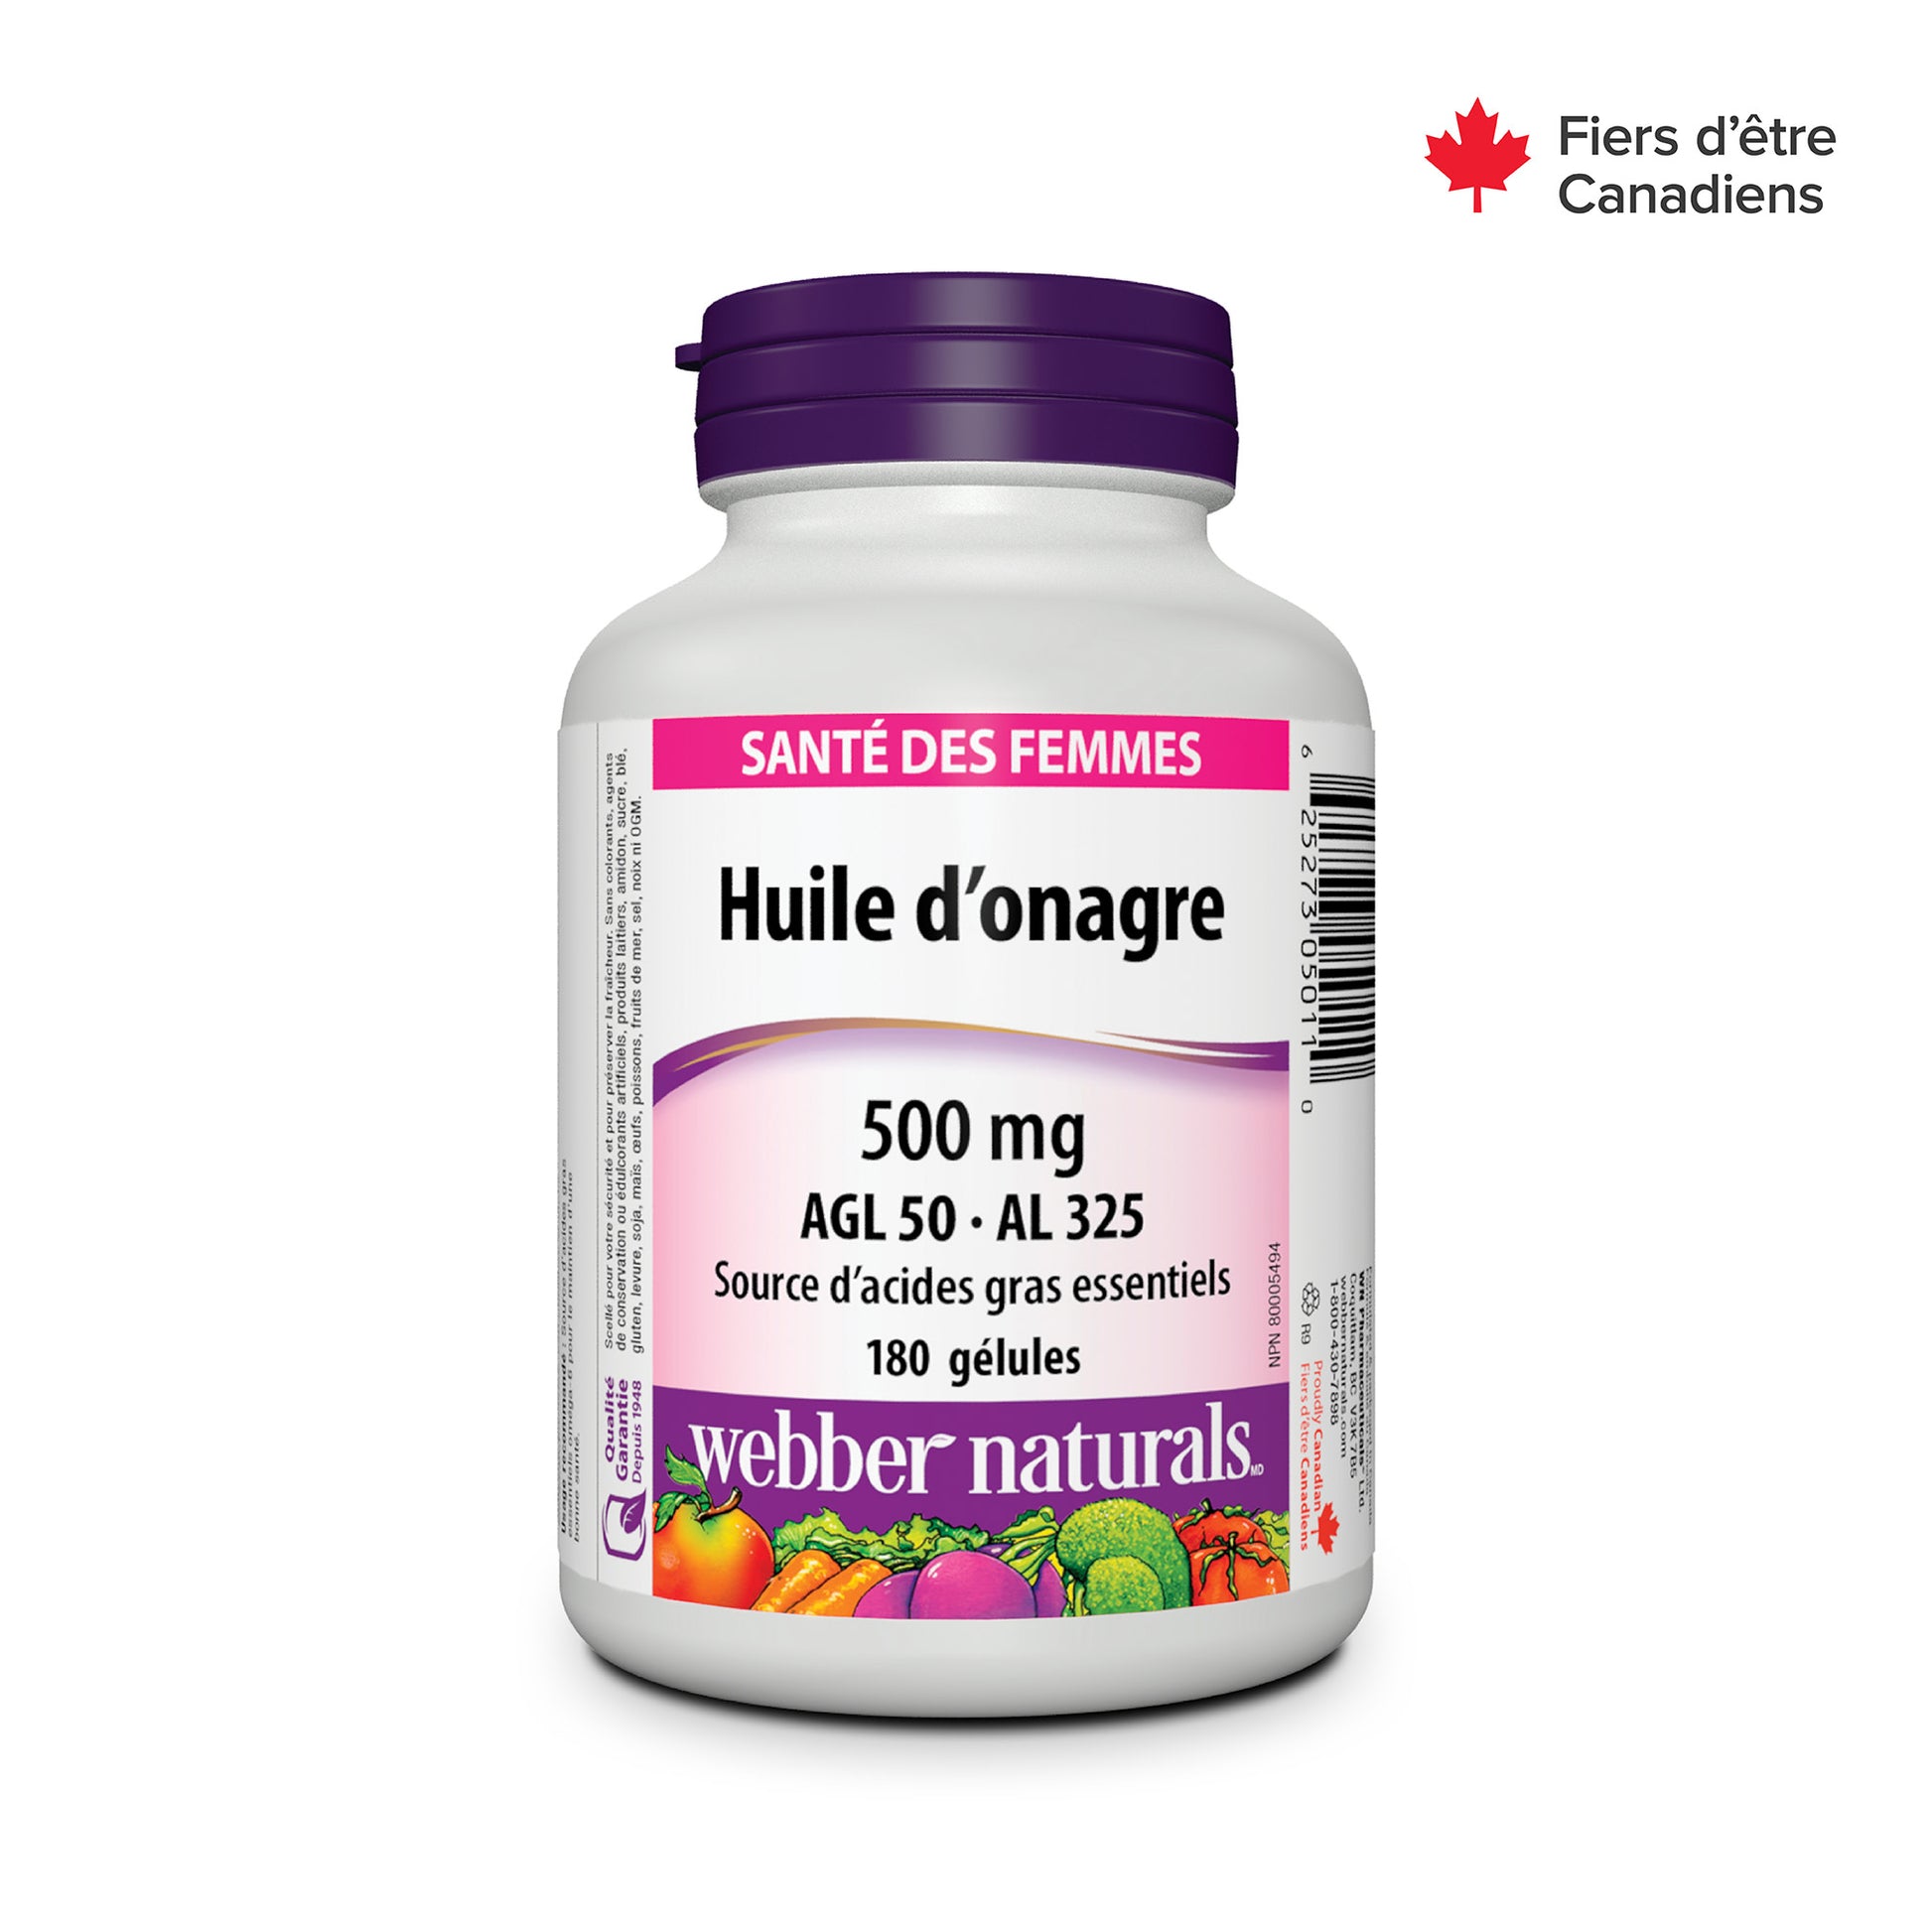 Huile d’onagre AGL 50 · AL 325 500 mg for Webber Naturals|v|hi-res|WN5011